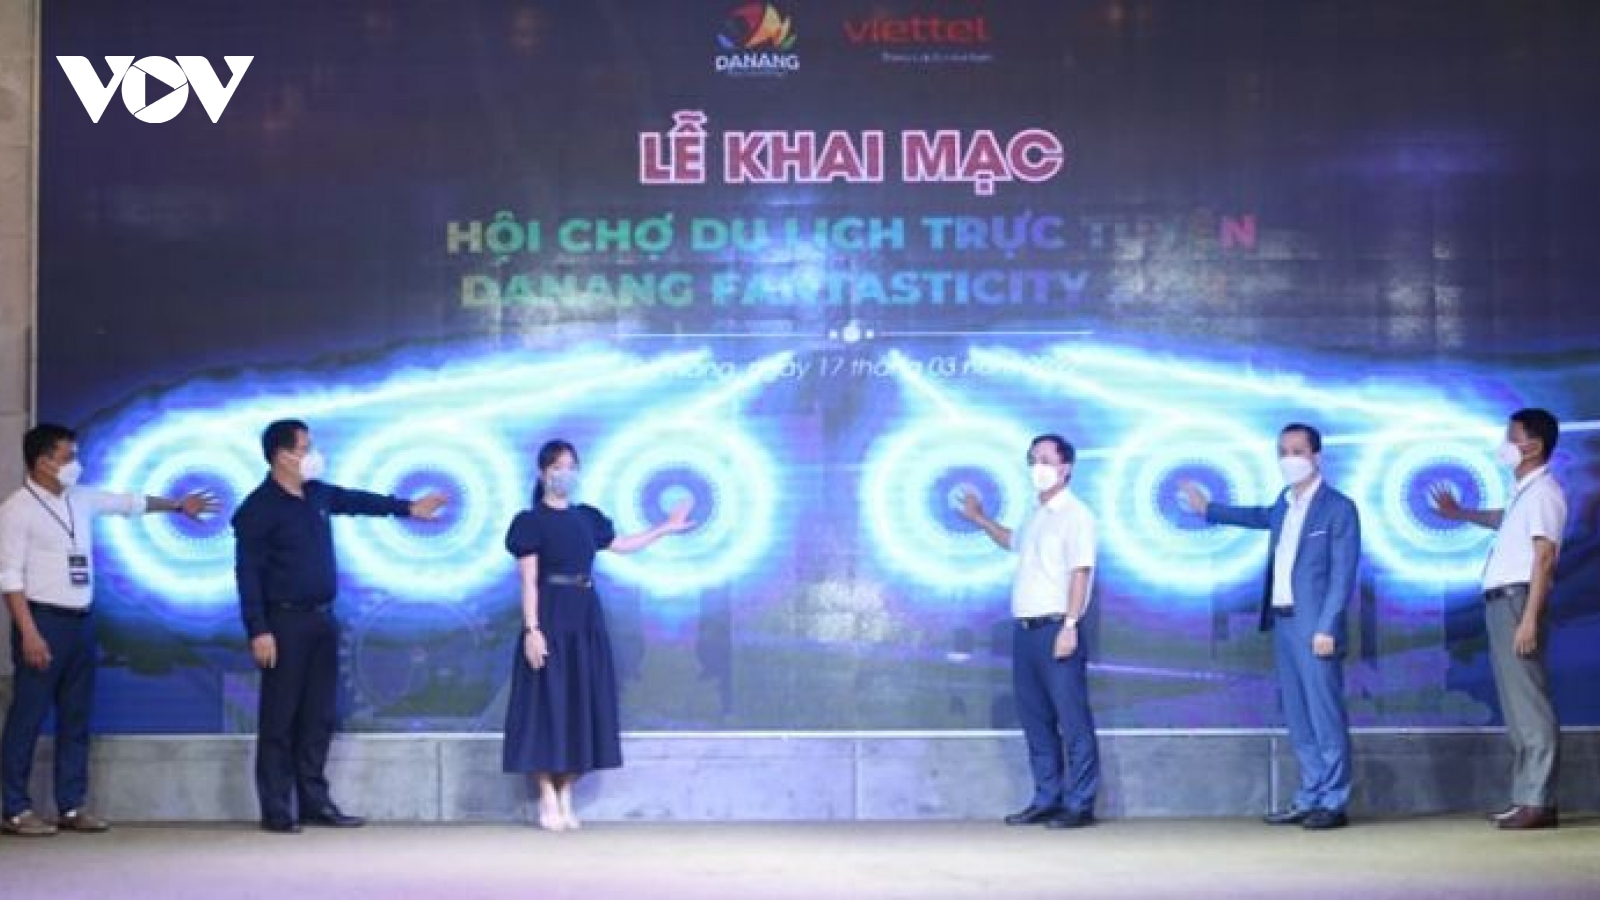 Khai mạc Hội chợ du lịch trực tuyến 2022 kết nối đến nhiều quốc gia ở Đà Nẵng